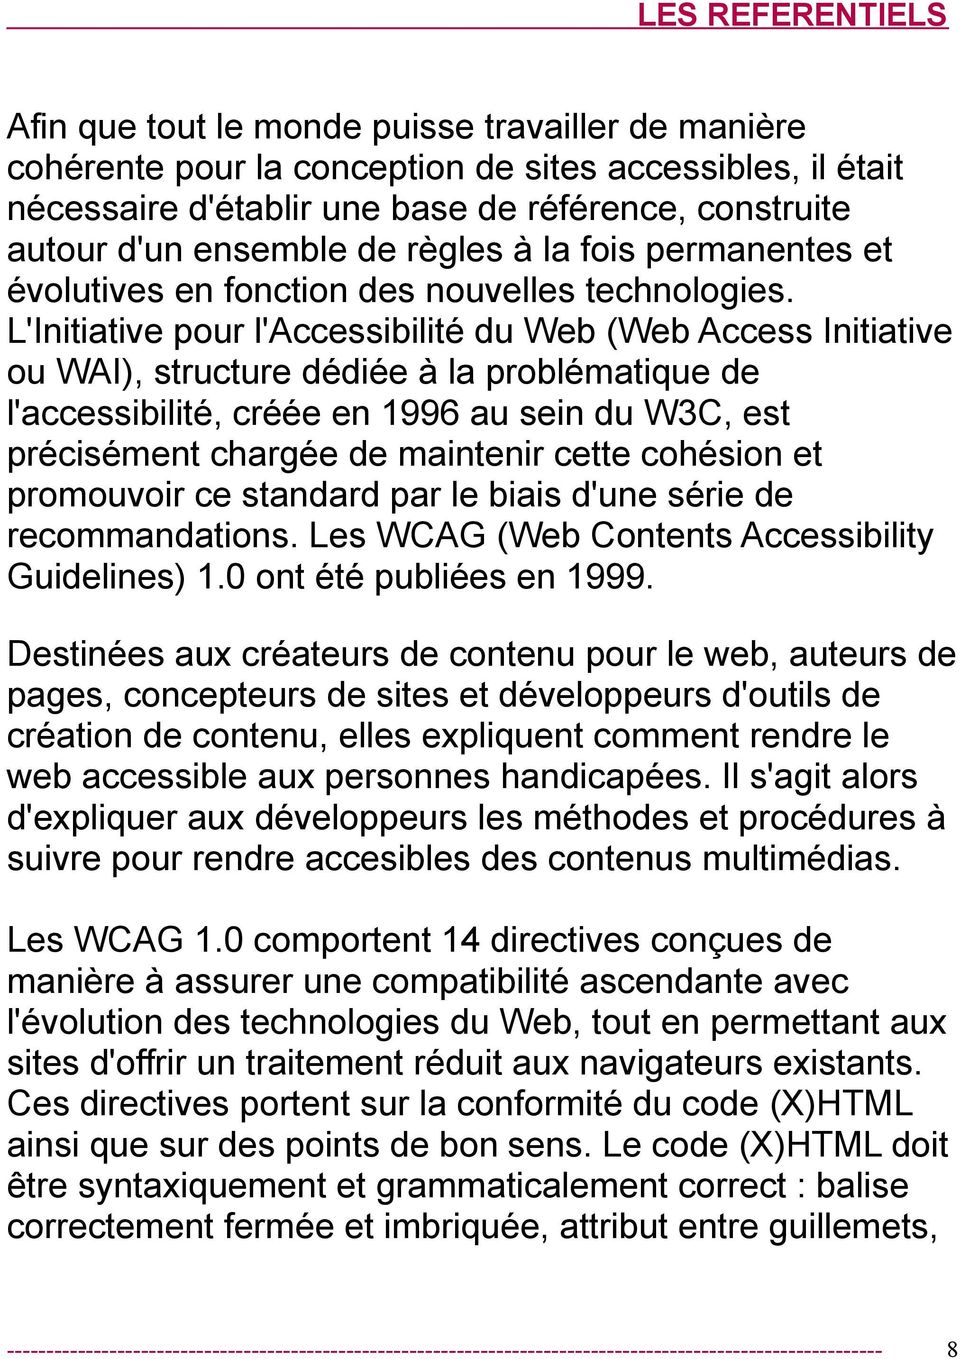 L'Initiative pour l'accessibilité du Web (Web Access Initiative ou WAI), structure dédiée à la problématique de l'accessibilité, créée en 1996 au sein du W3C, est précisément chargée de maintenir